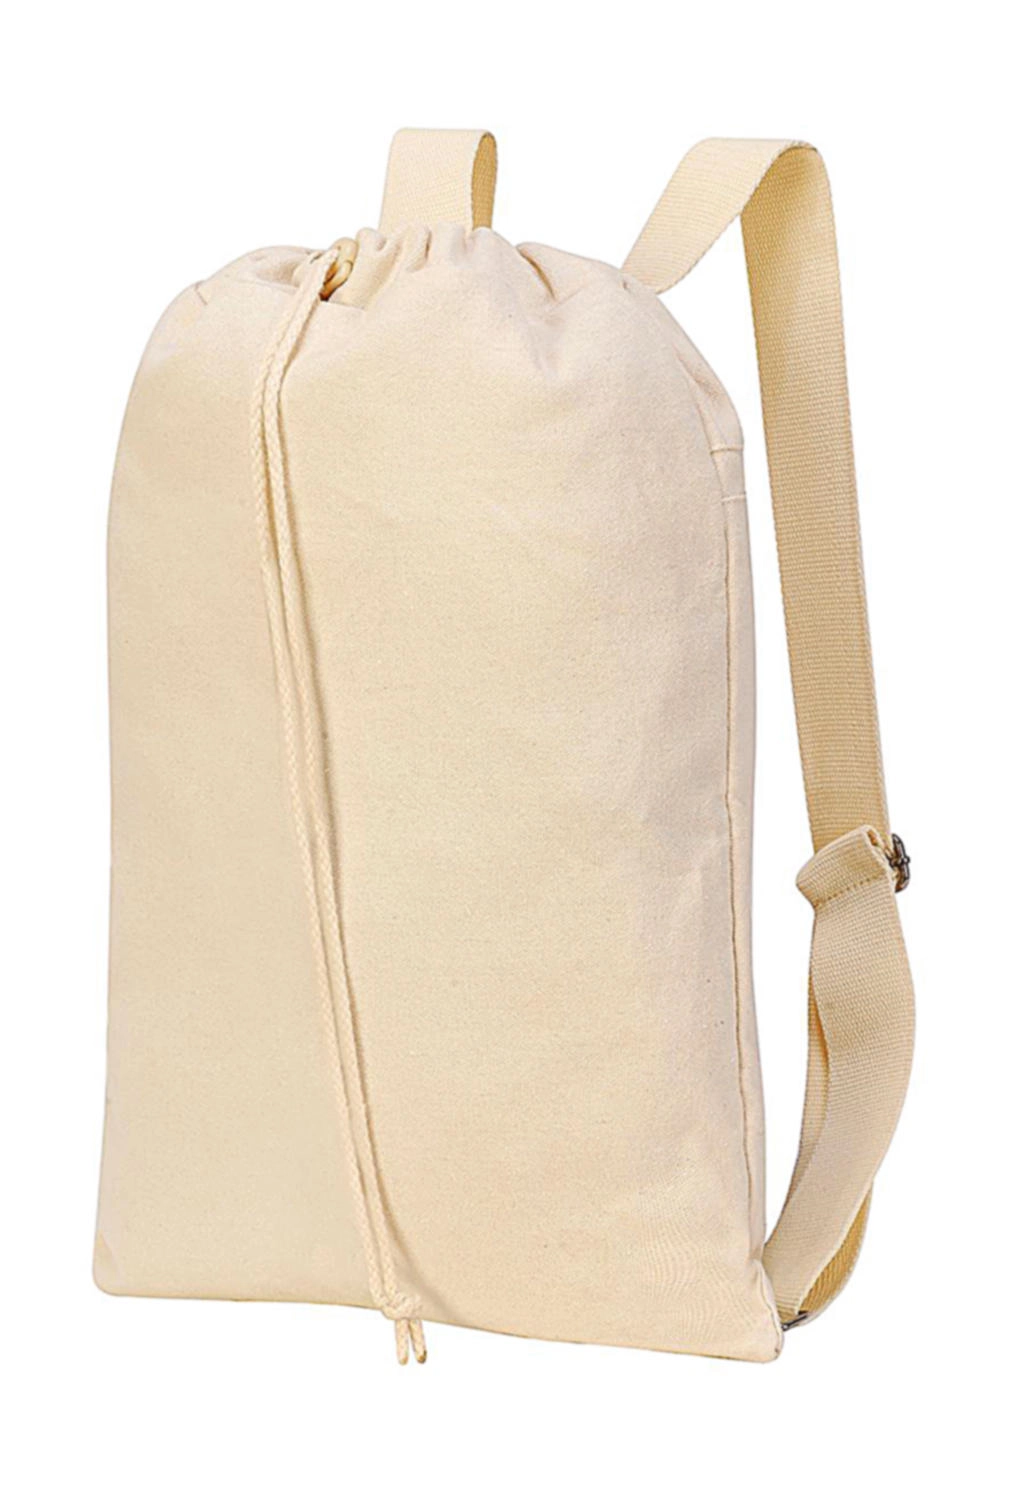 Sheffield Cotton Drawstring Backpack zum Besticken und Bedrucken in der Farbe Natural Washed mit Ihren Logo, Schriftzug oder Motiv.